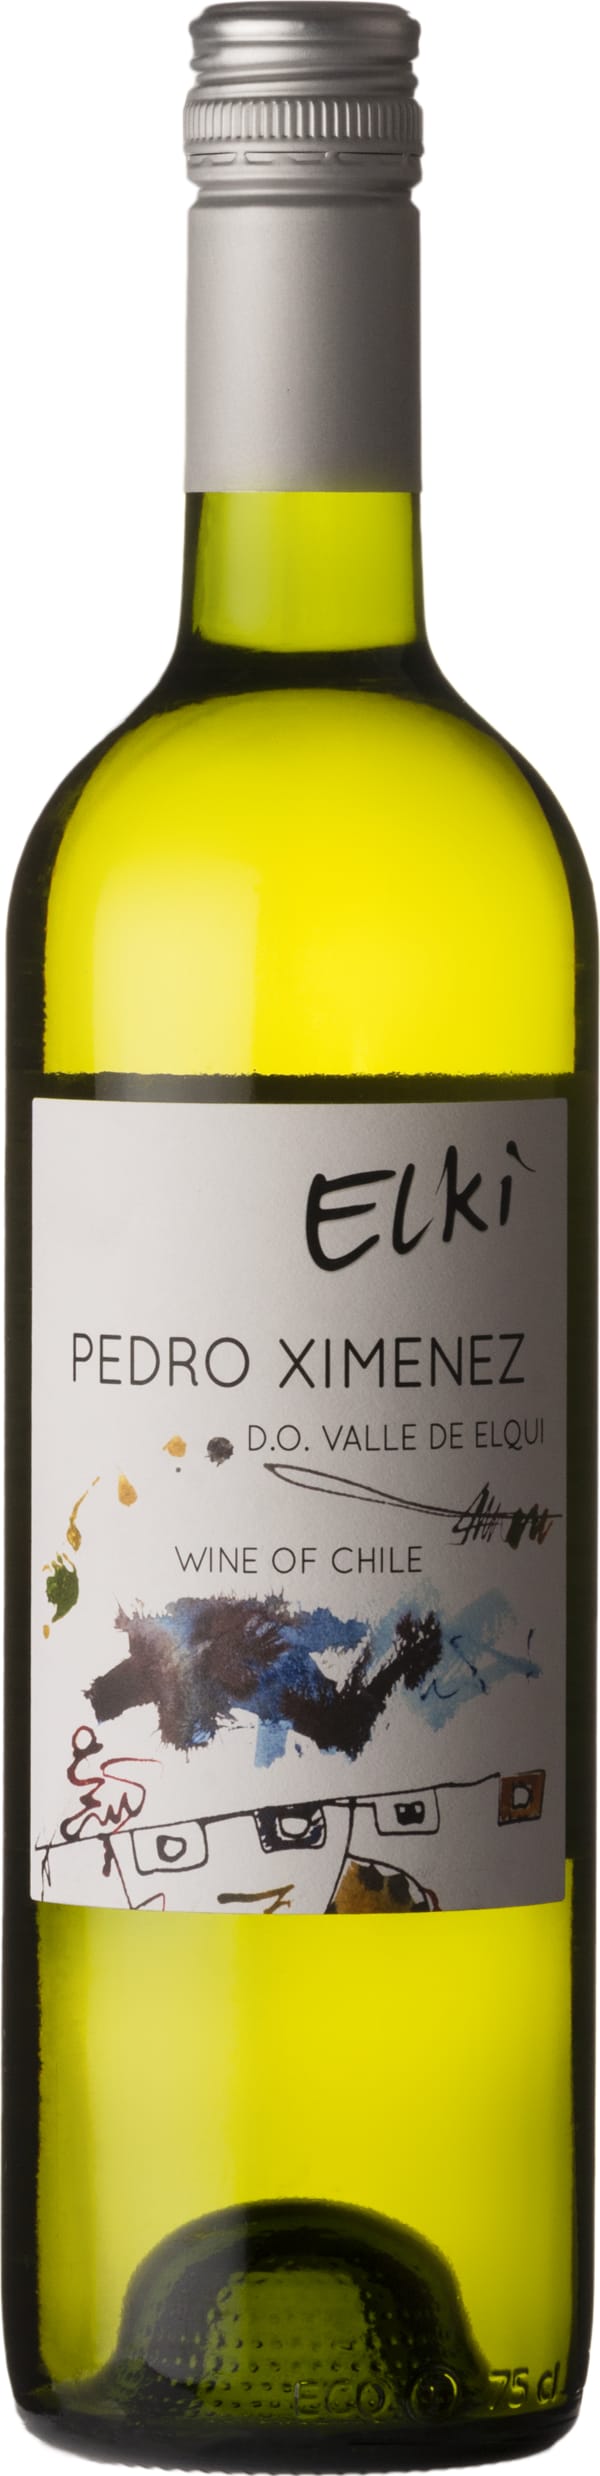 Elki Pedro Ximenez 2022 75cl - Buy Elki Wines from GREAT WINES DIRECT wine shop